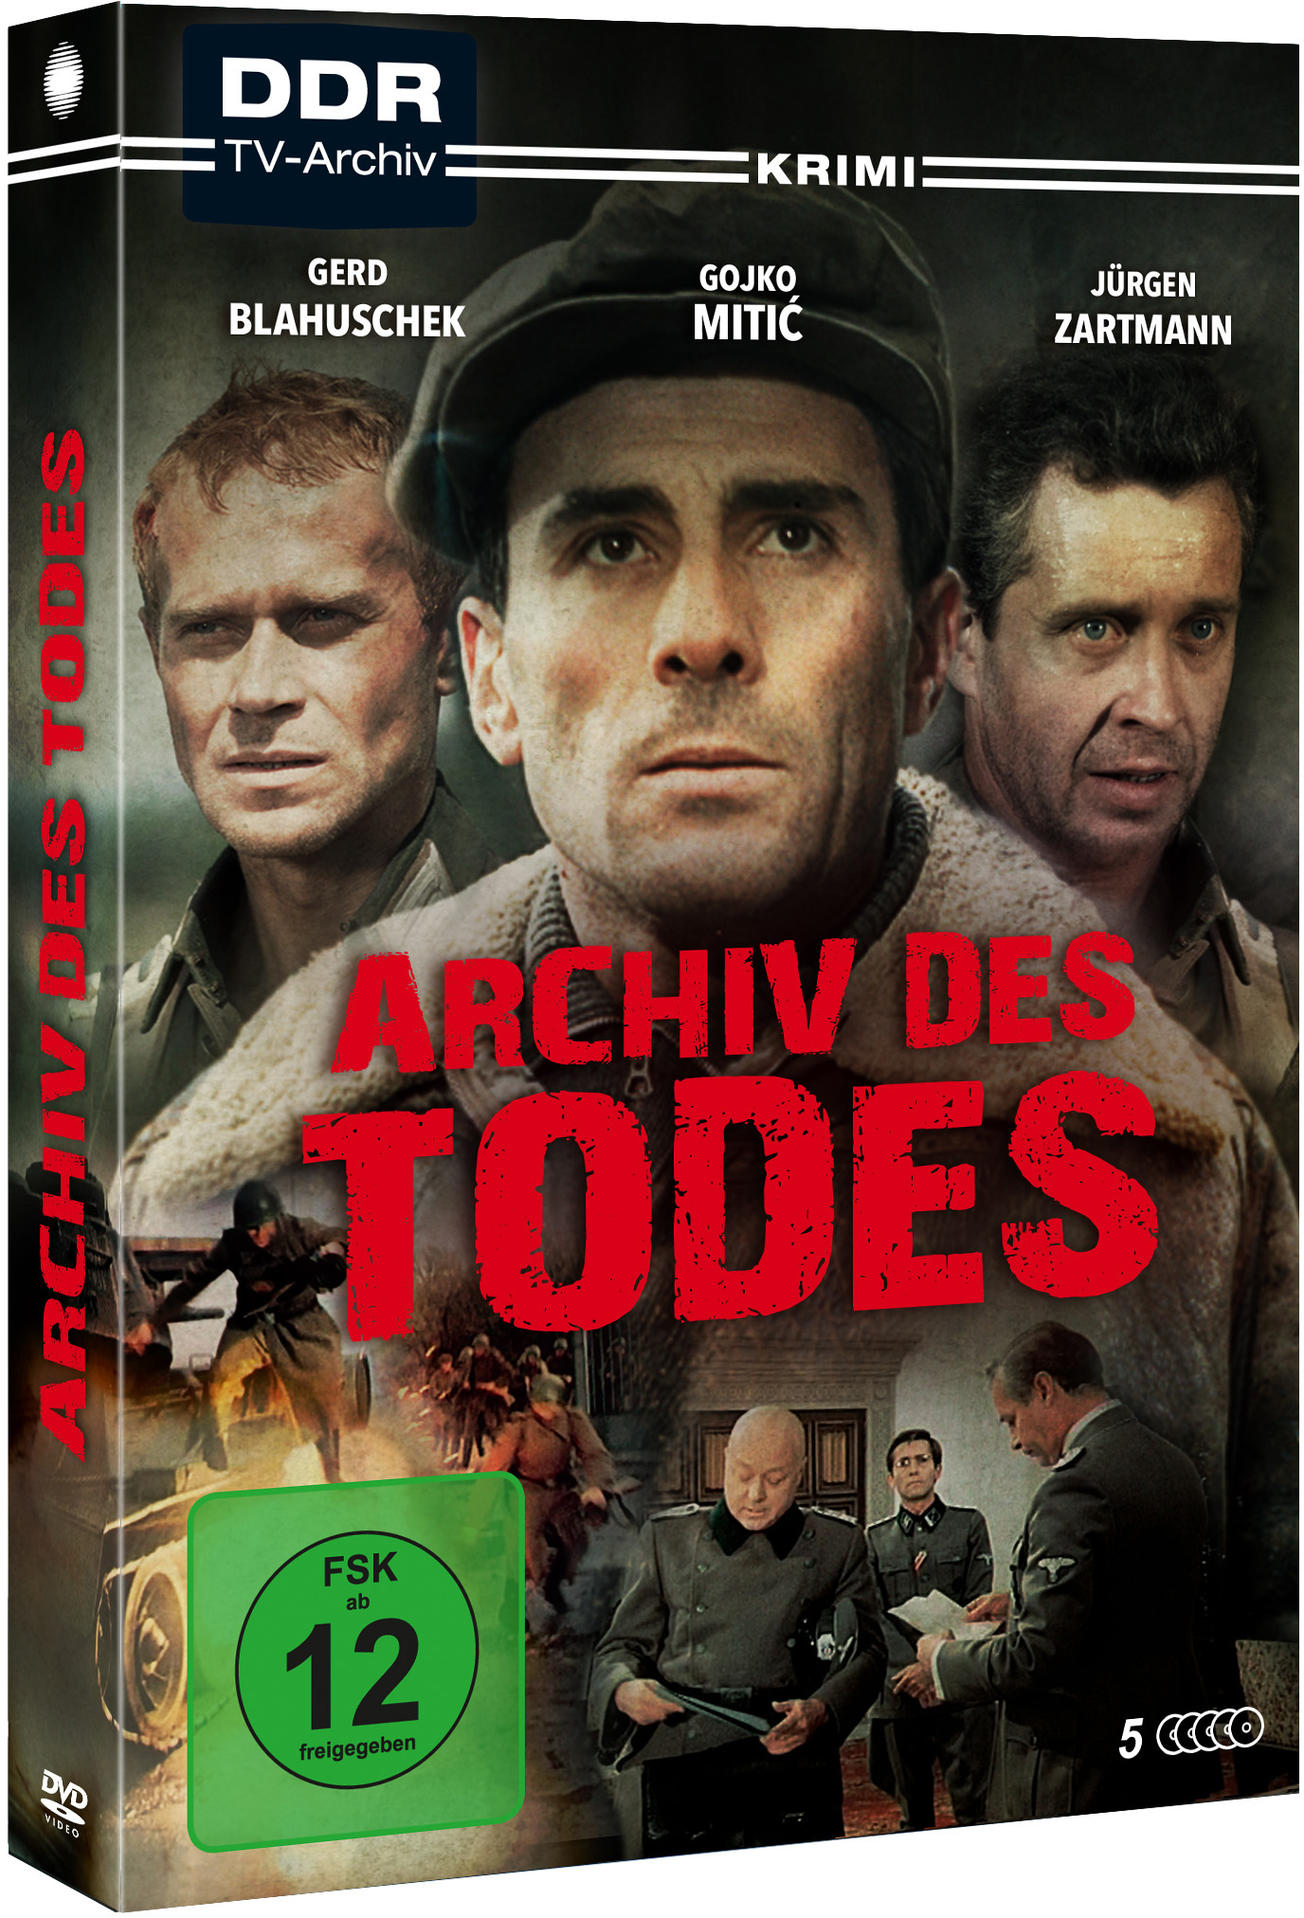 Todes Archiv DVD des